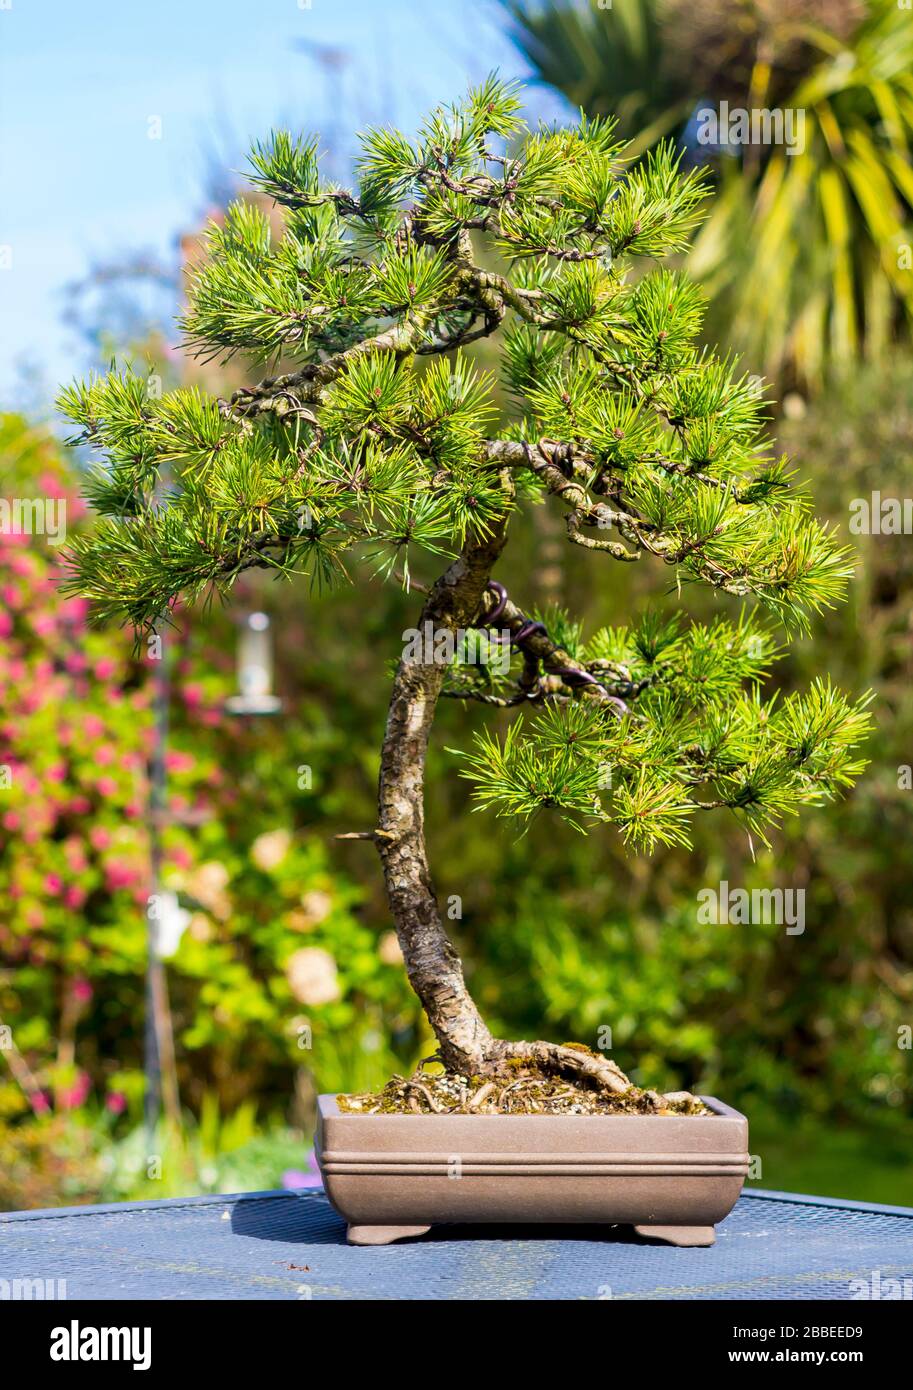 Spécimen remarquable verticale informelle Lonicera bonsaï sur l'affichage dans un jardin dans les amateurs de Bangor Northern Ireland Banque D'Images